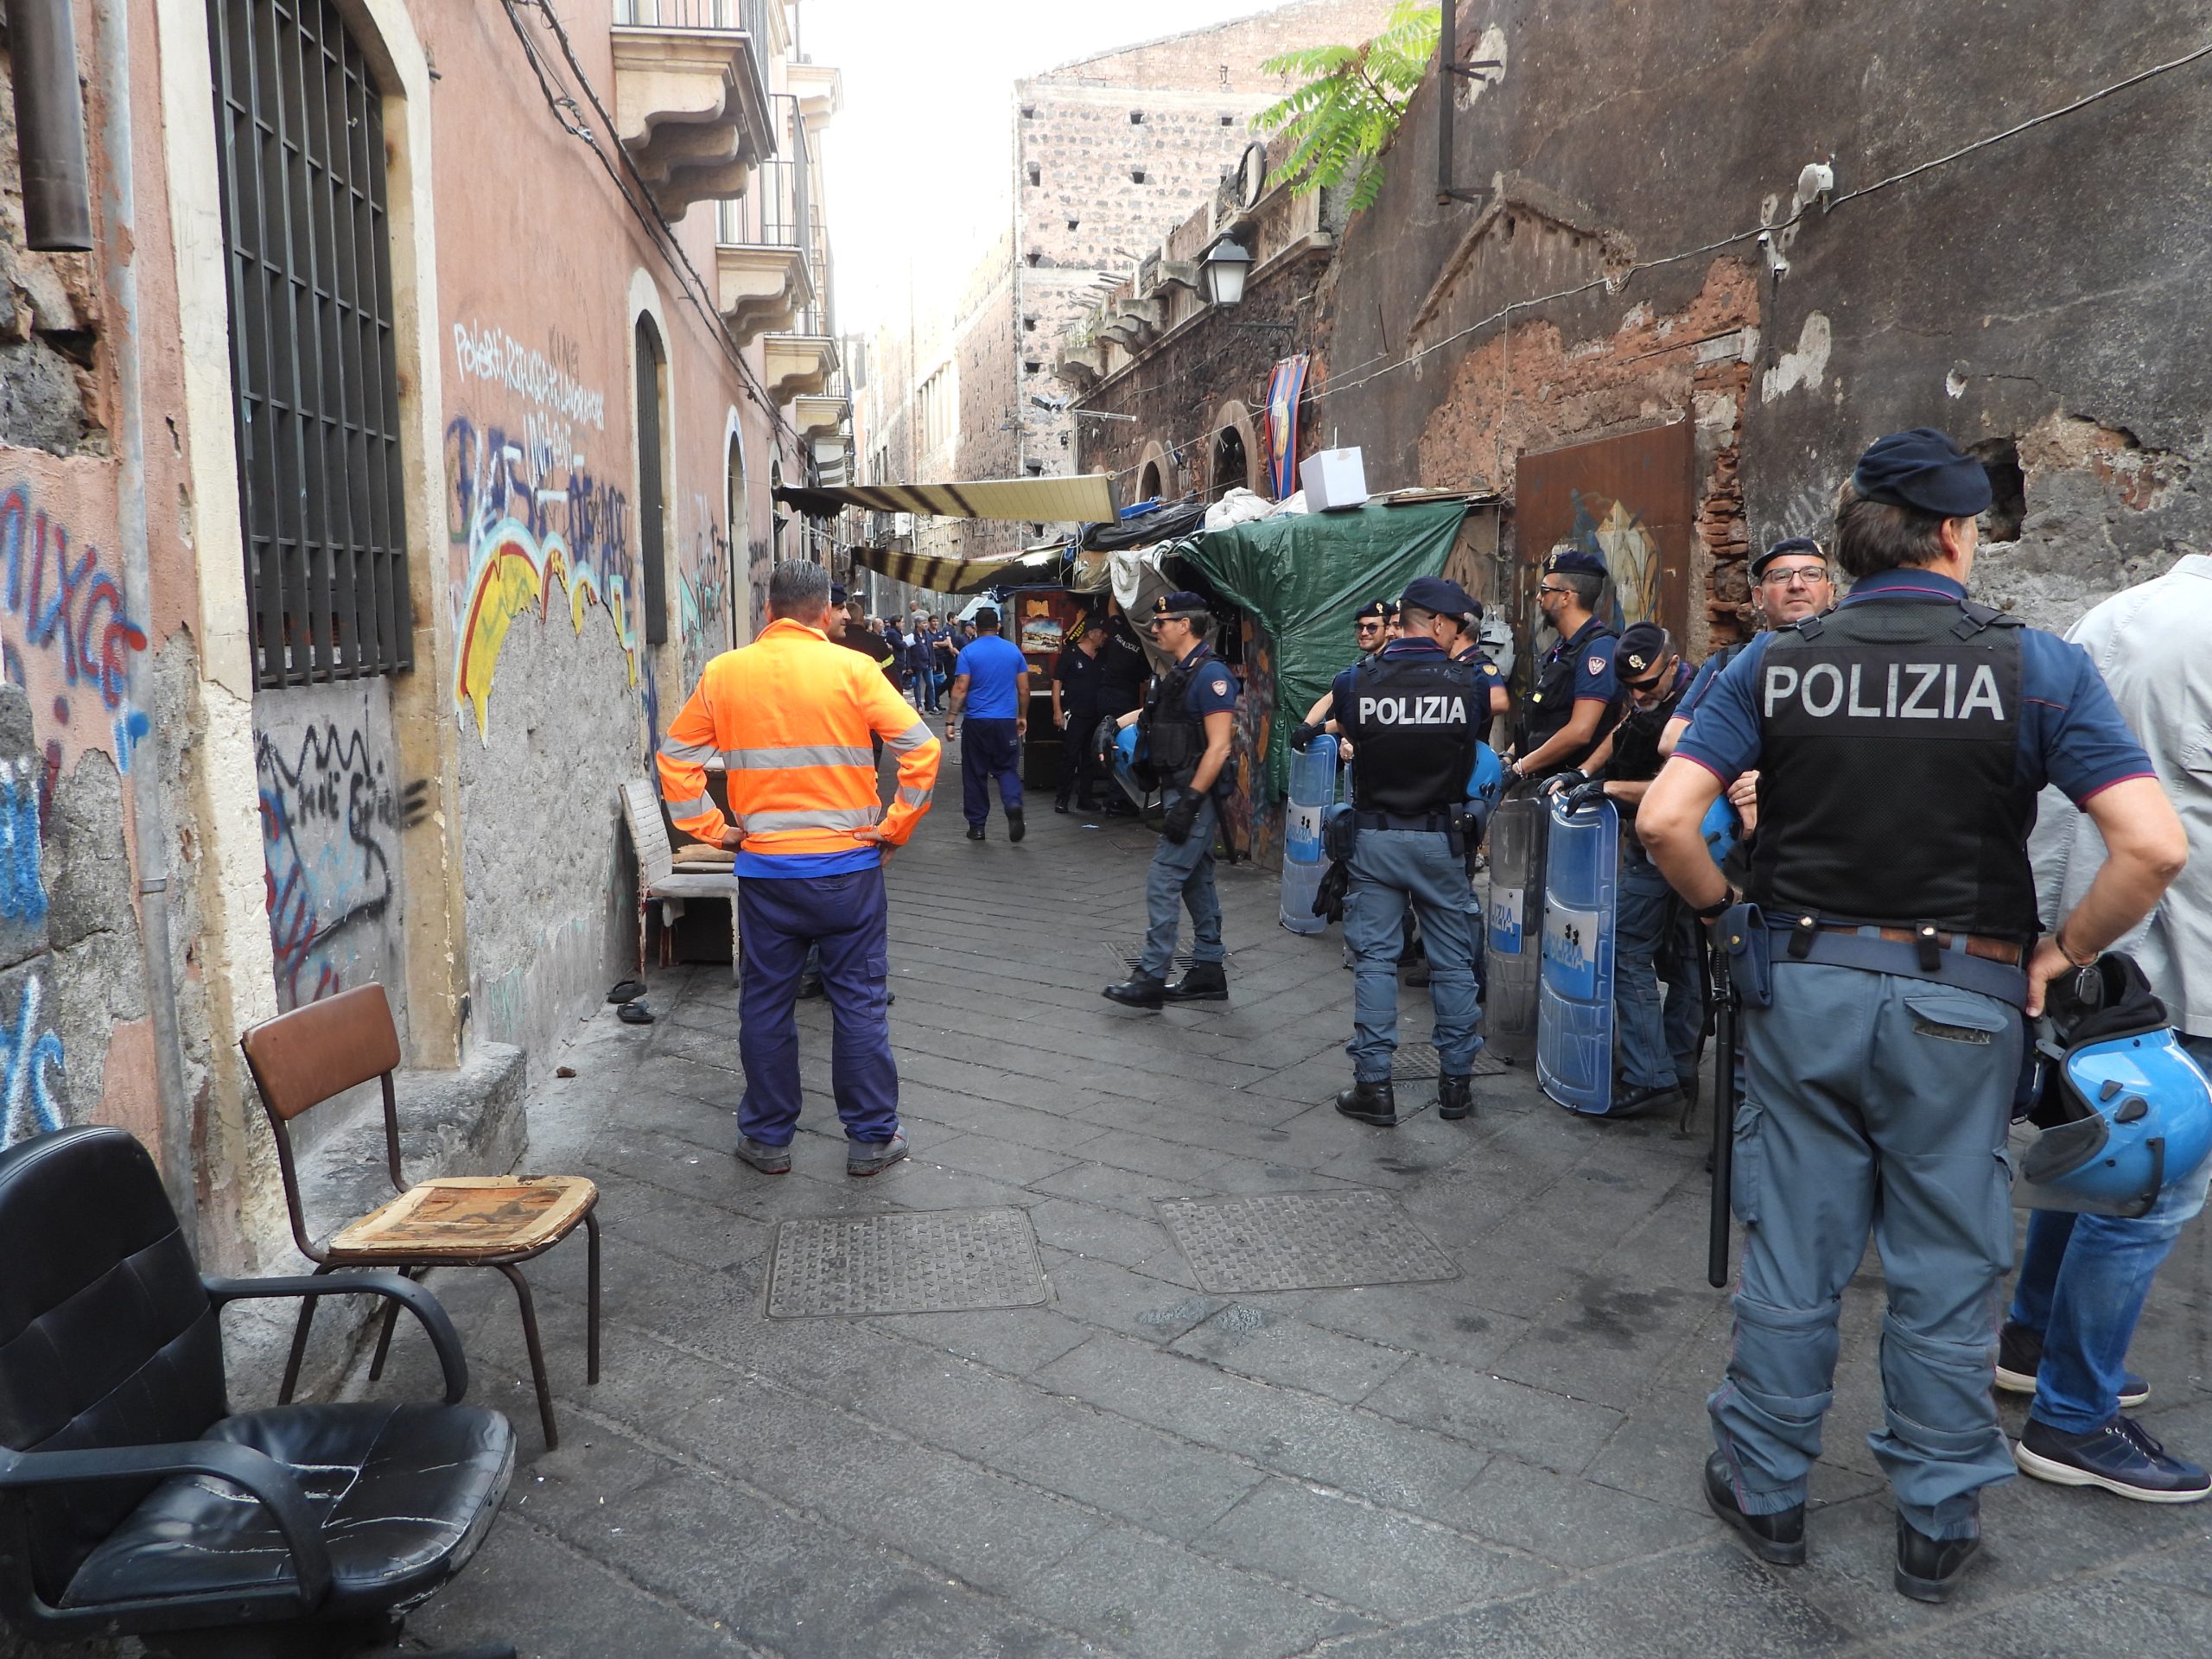 Operazione a San Berillo, i risultati del blitz nel centro storico di Catania